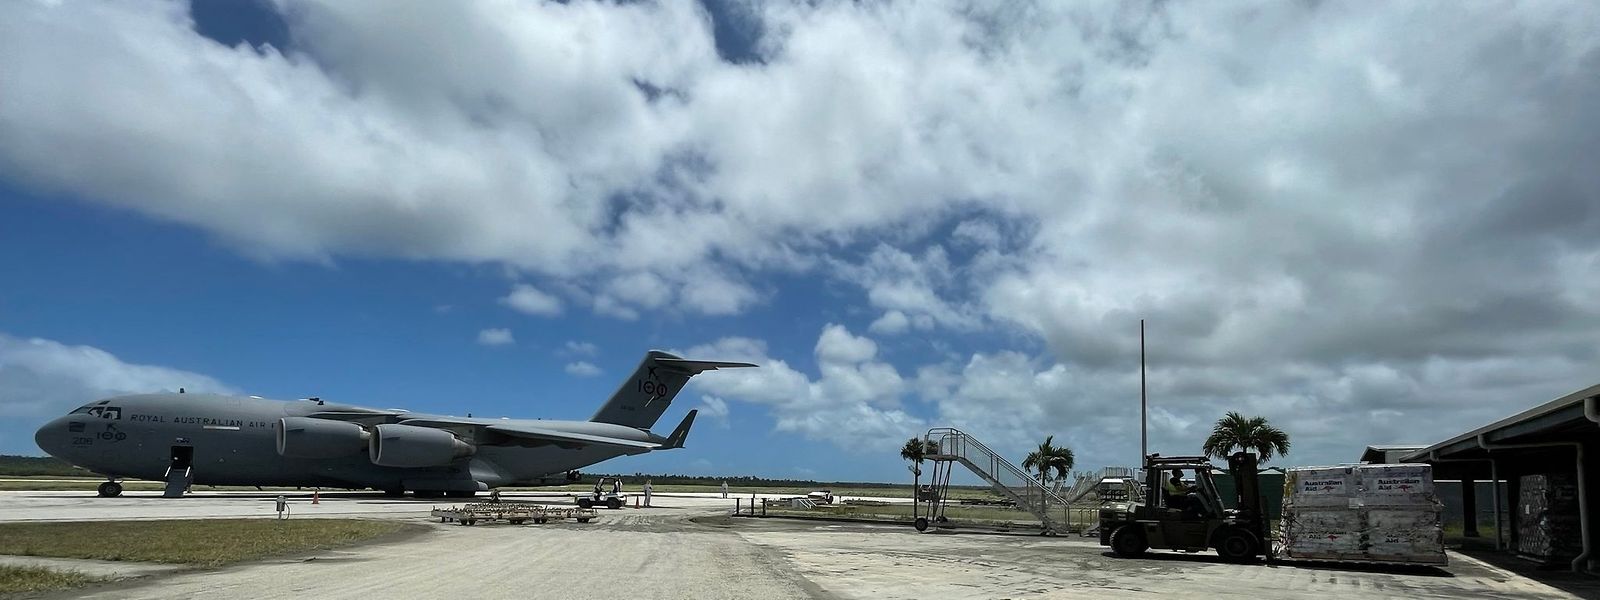 Aeroporto de Tonga recebe ajuda humanitária após erupção do vulcão.